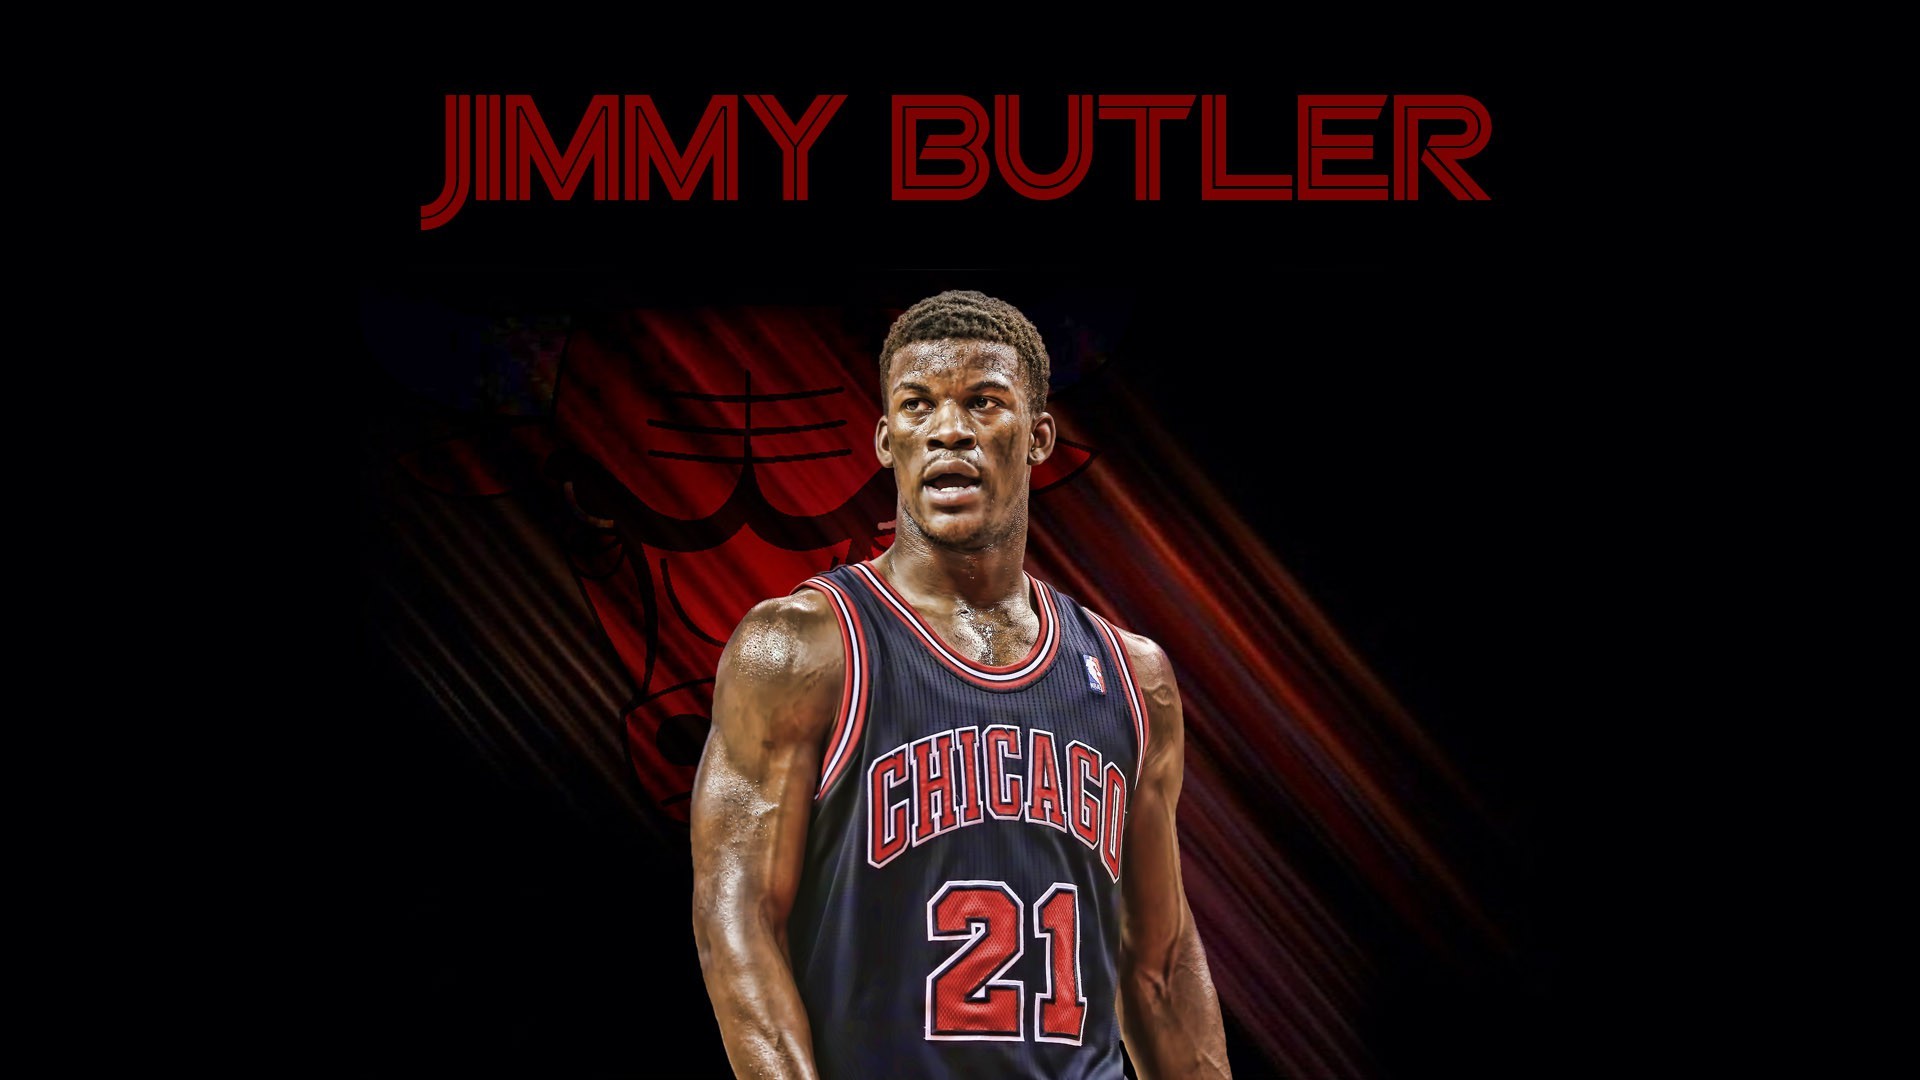 1920x1080 Jimmy Butler 21 Chicago Bulls 2015 Wallpaper